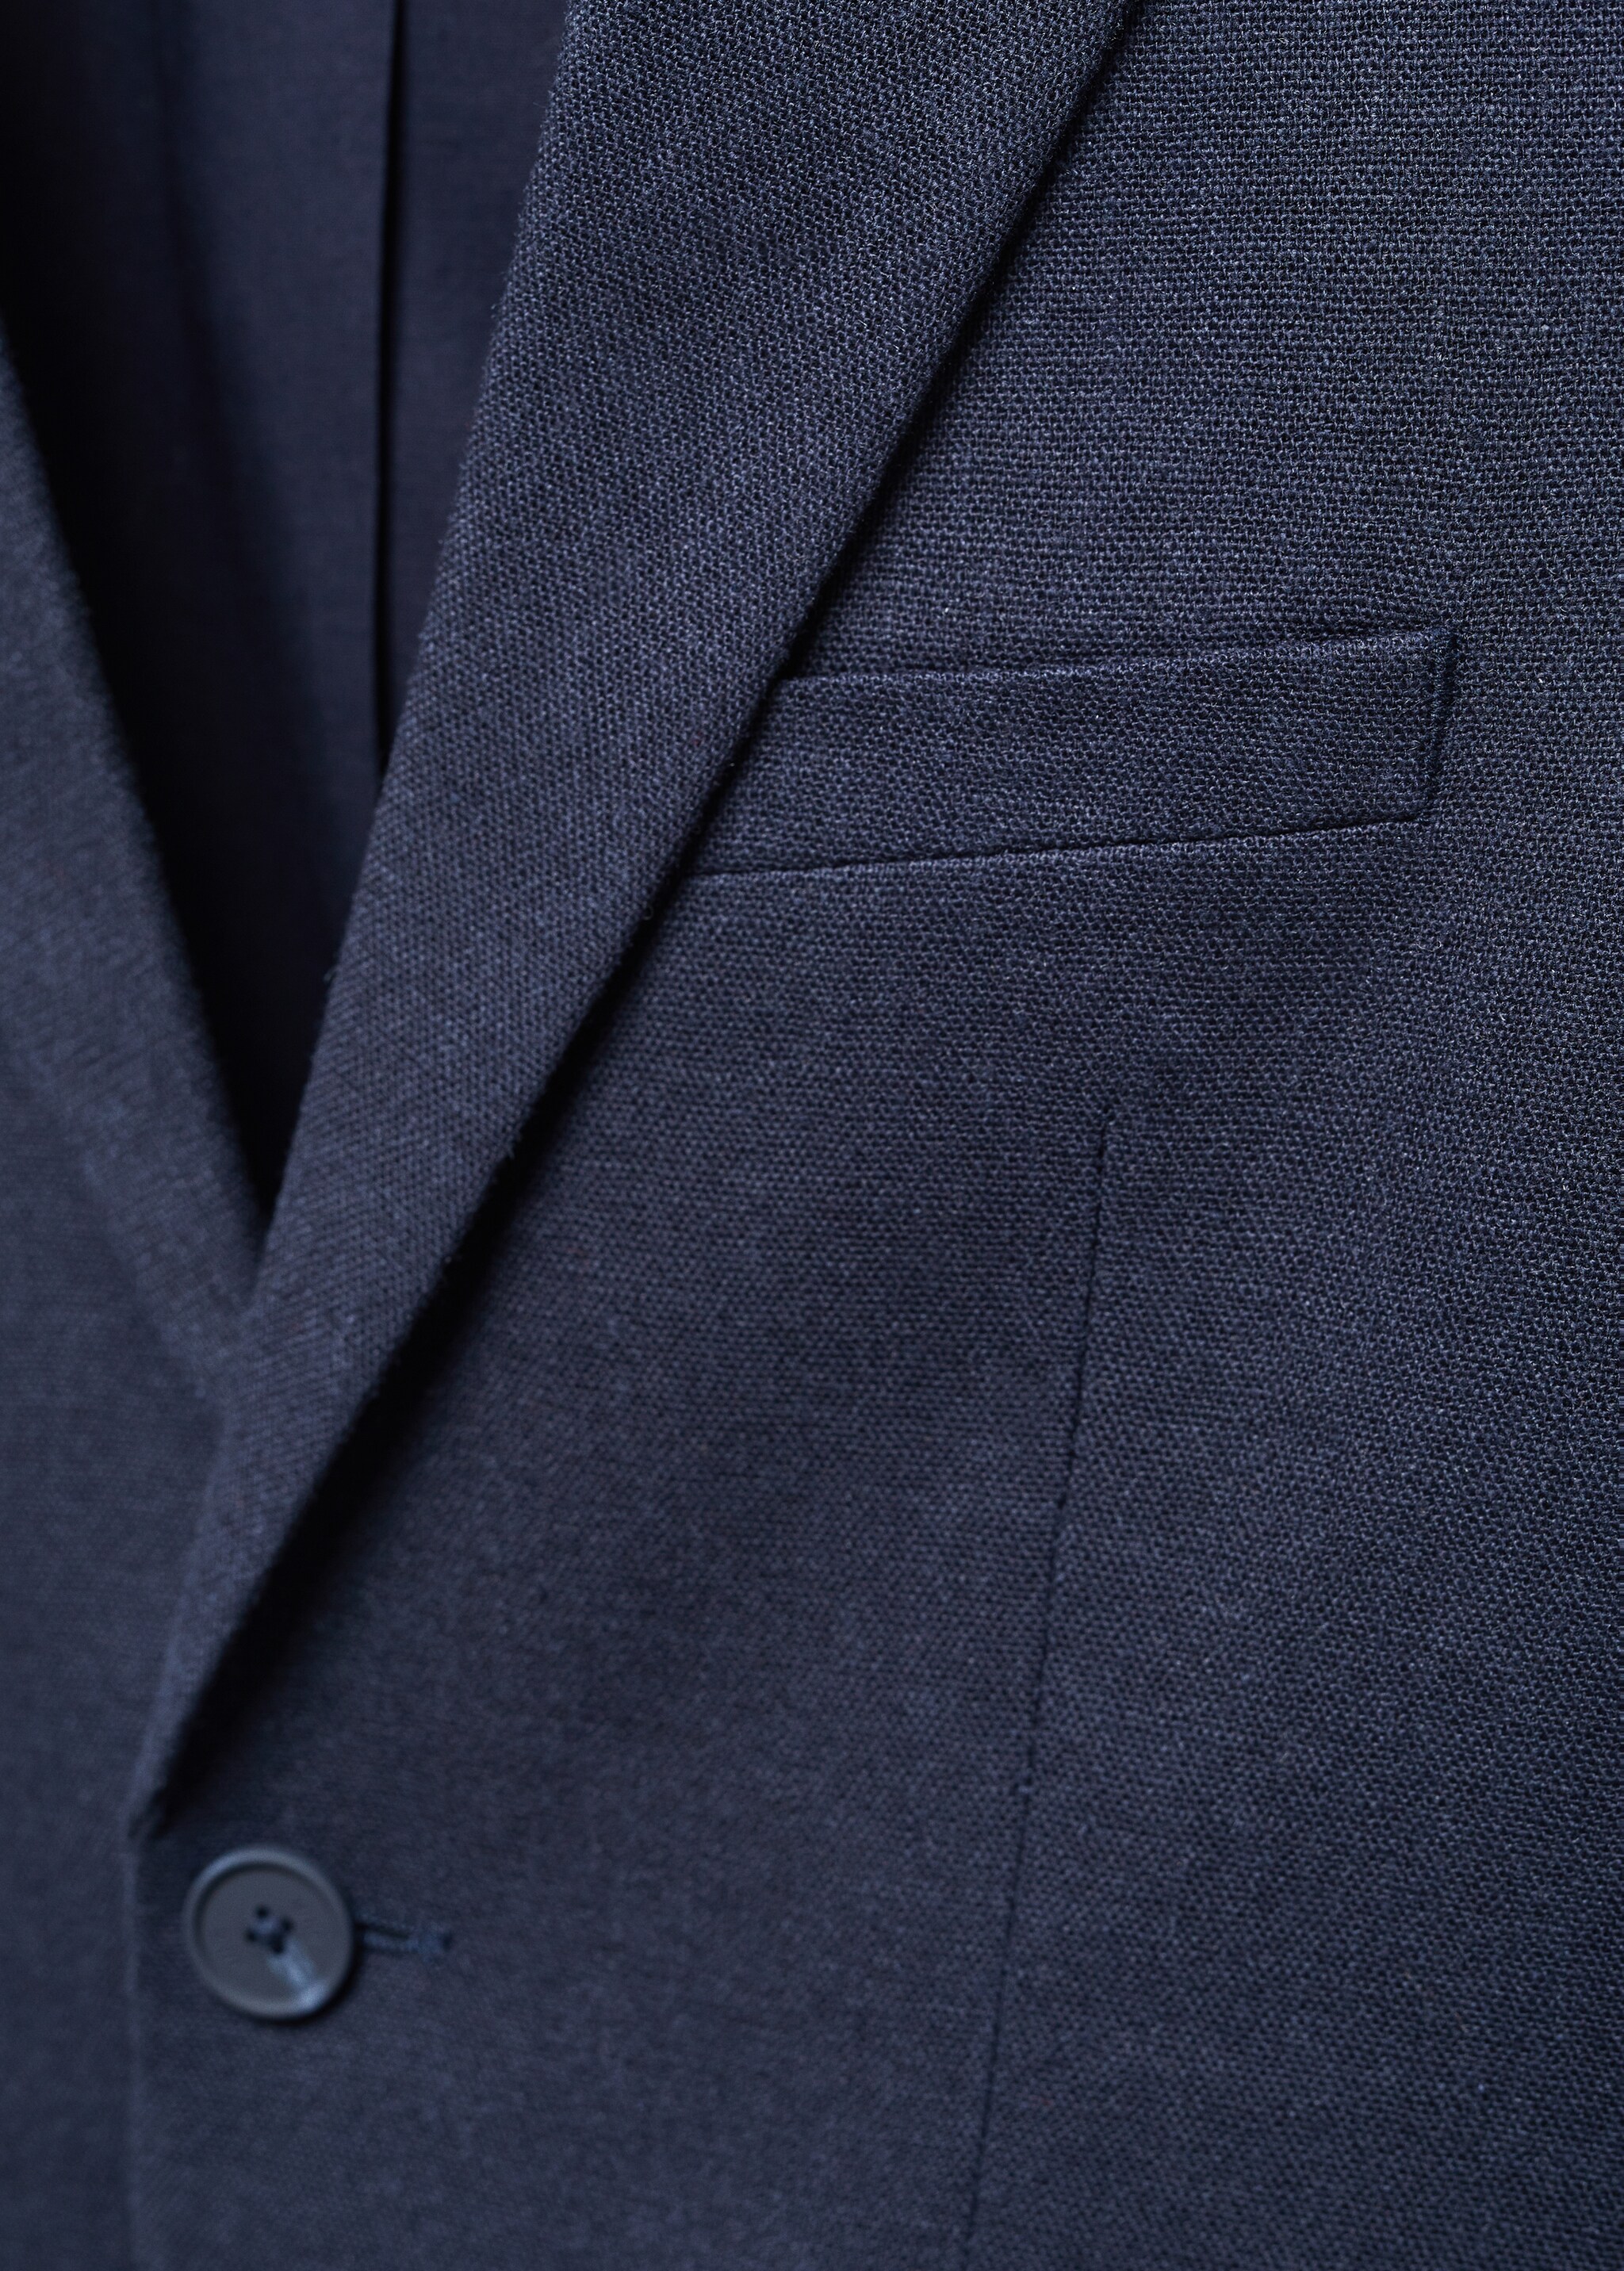 Linen blazer suit - Details of the article 8